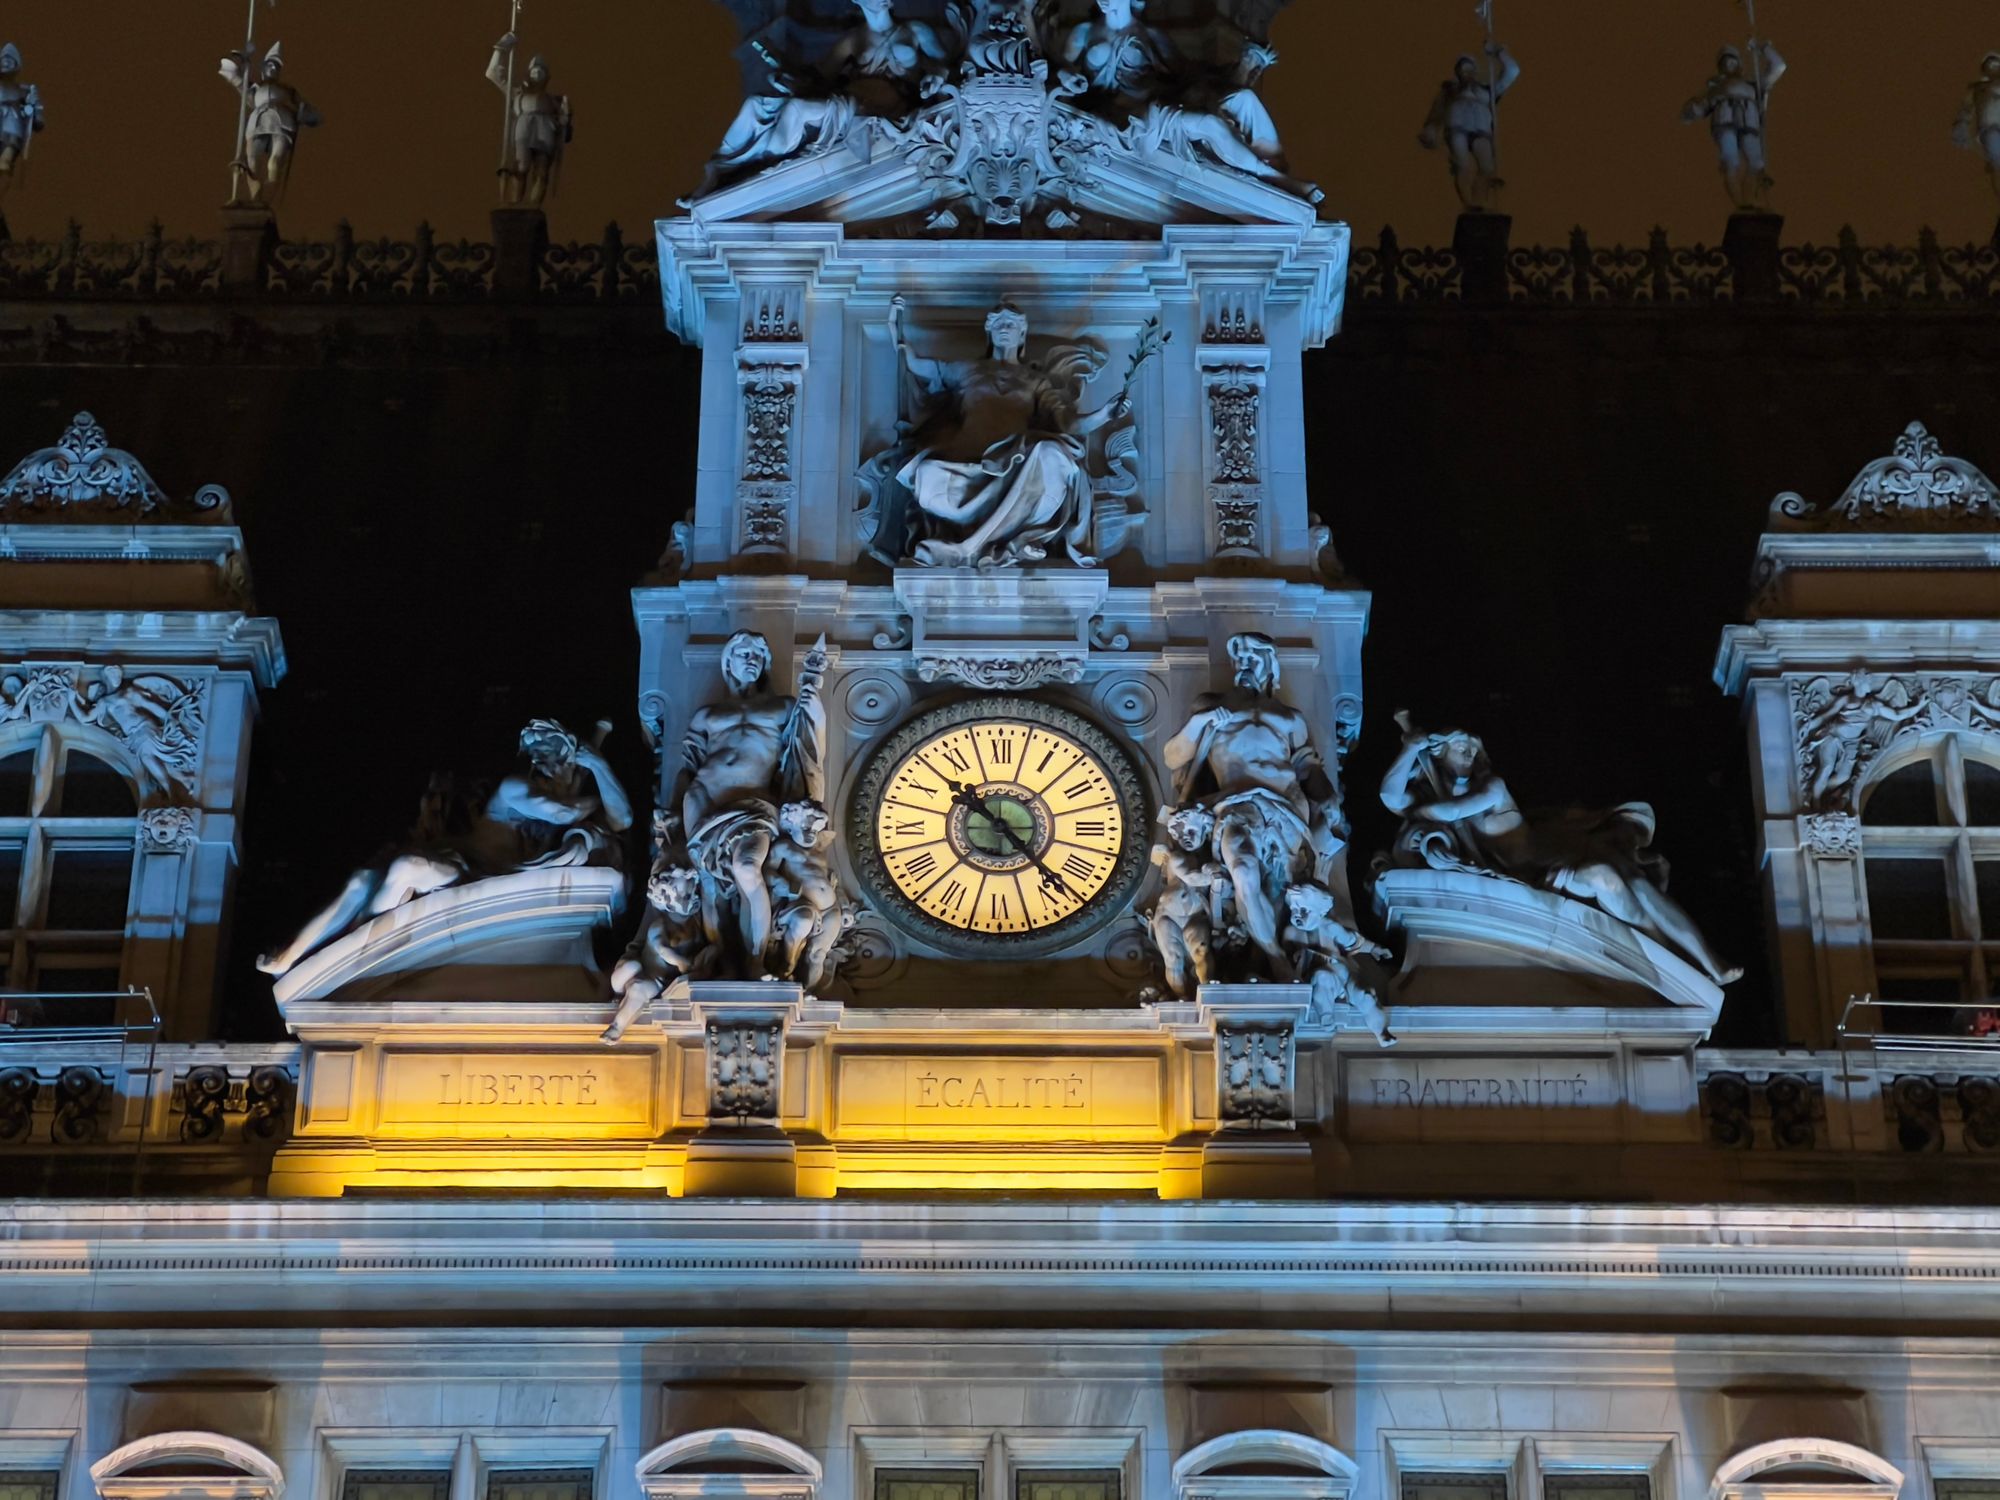 The clock frontage of Hôtel de Ville showing about 10pm. The “Liberté” and “Égalité” panels are lit, “Fraternité” is not.